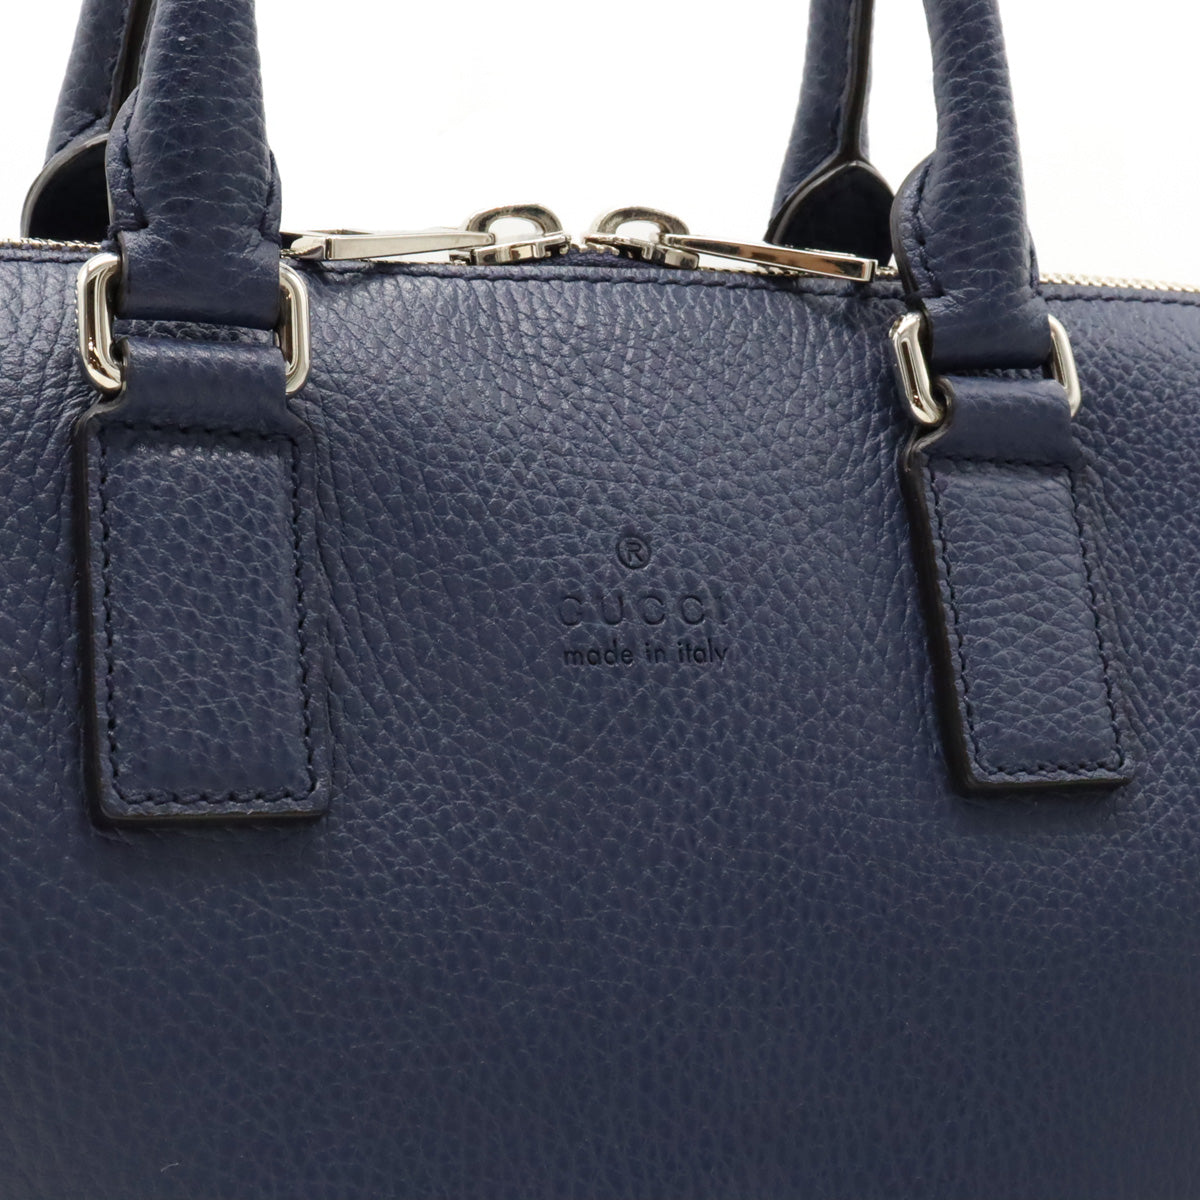 Gucci Gucci Business Bag Paper Bag Handbag 2WAY Shoulder Bag  Blue Black Silver Gold 387074 Blumin